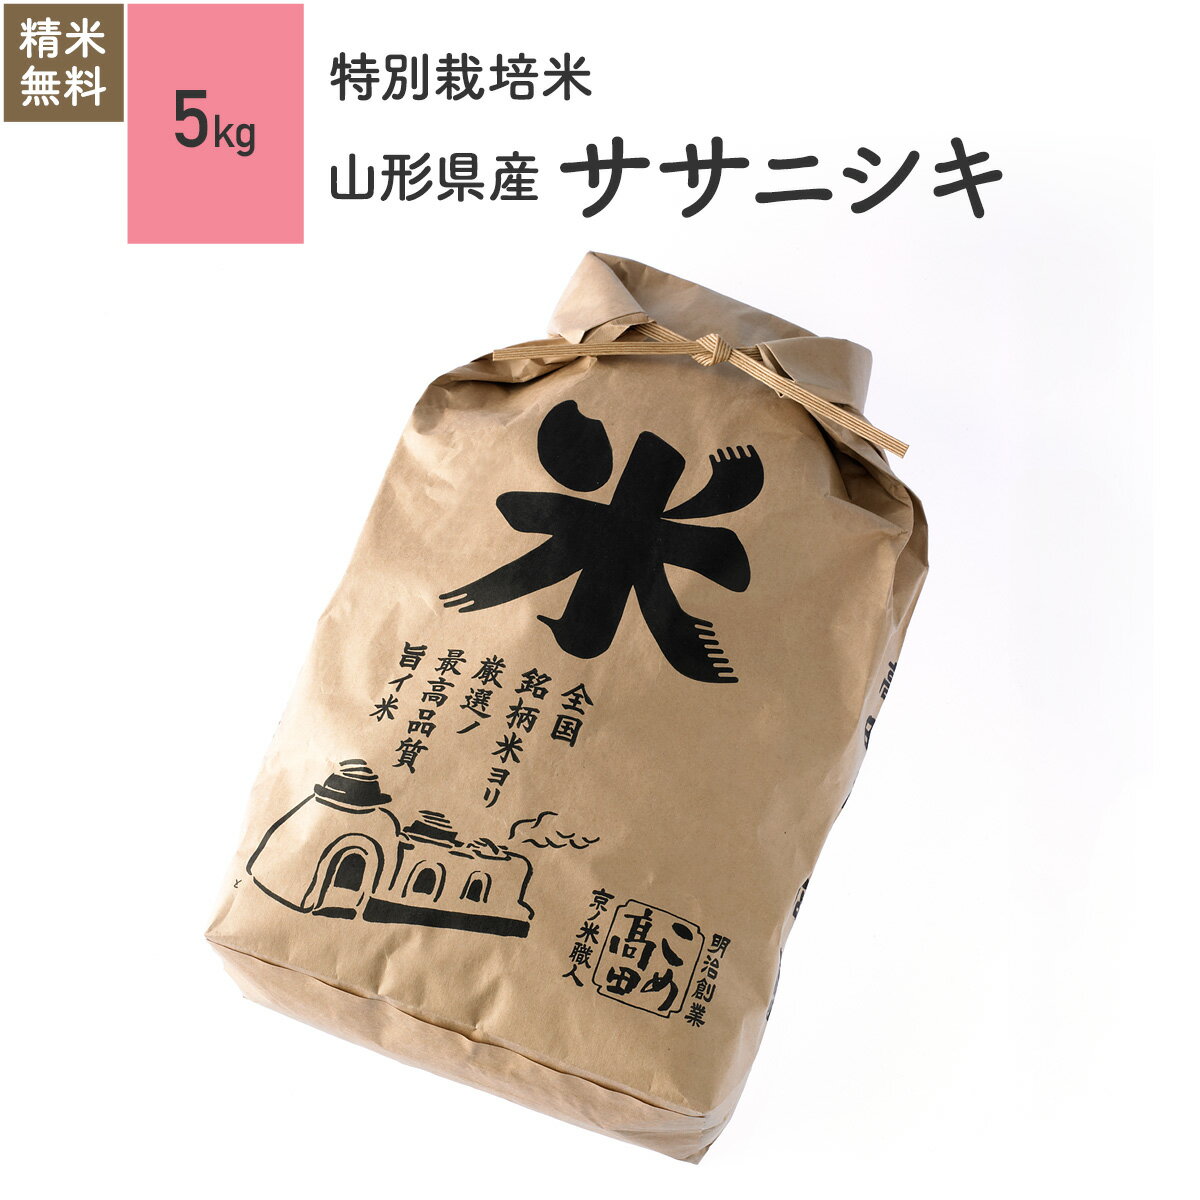 米 5kg ササニシキ 山形県産 特別栽培米 30年産お米 分つき米 玄米...